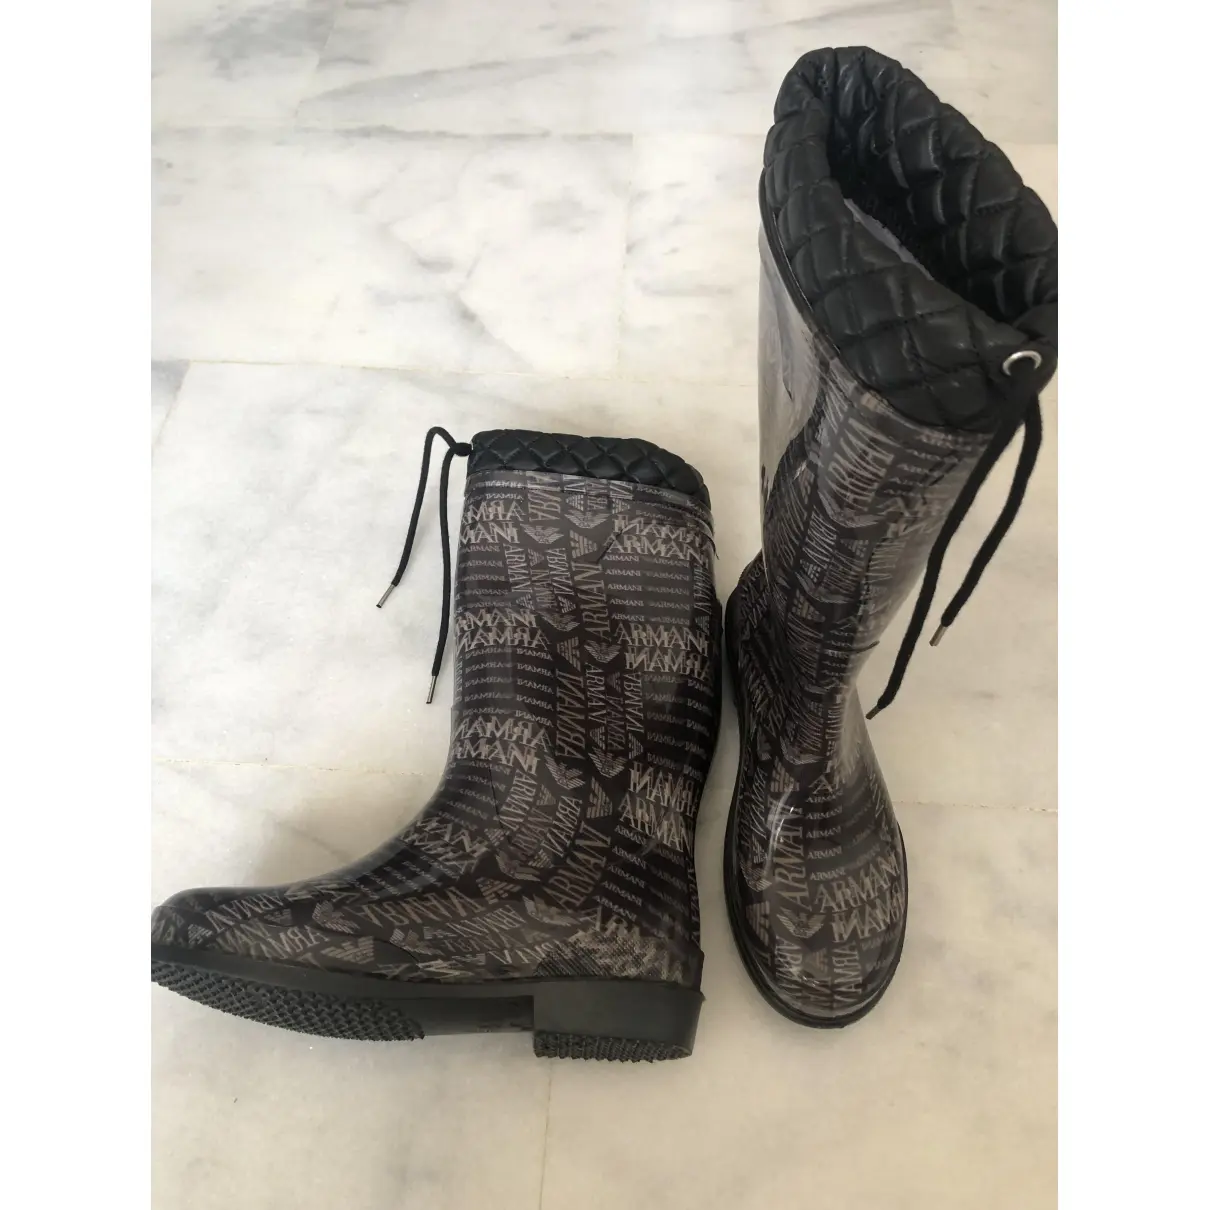 Armani Collezioni Wellington boots for sale